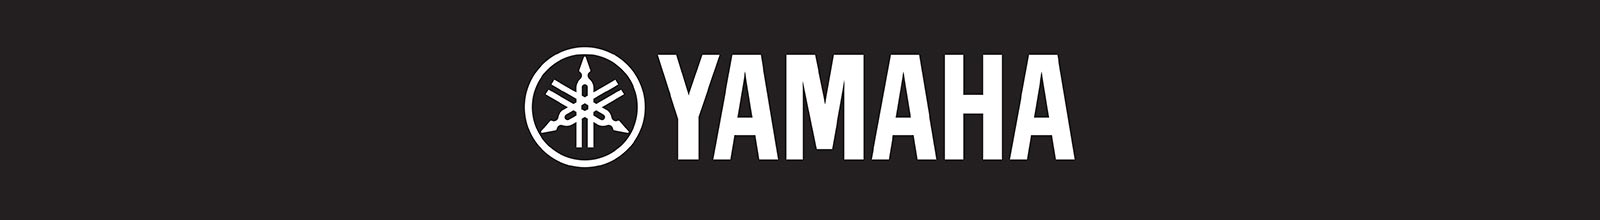 Yamaha White Logo Header Black Background